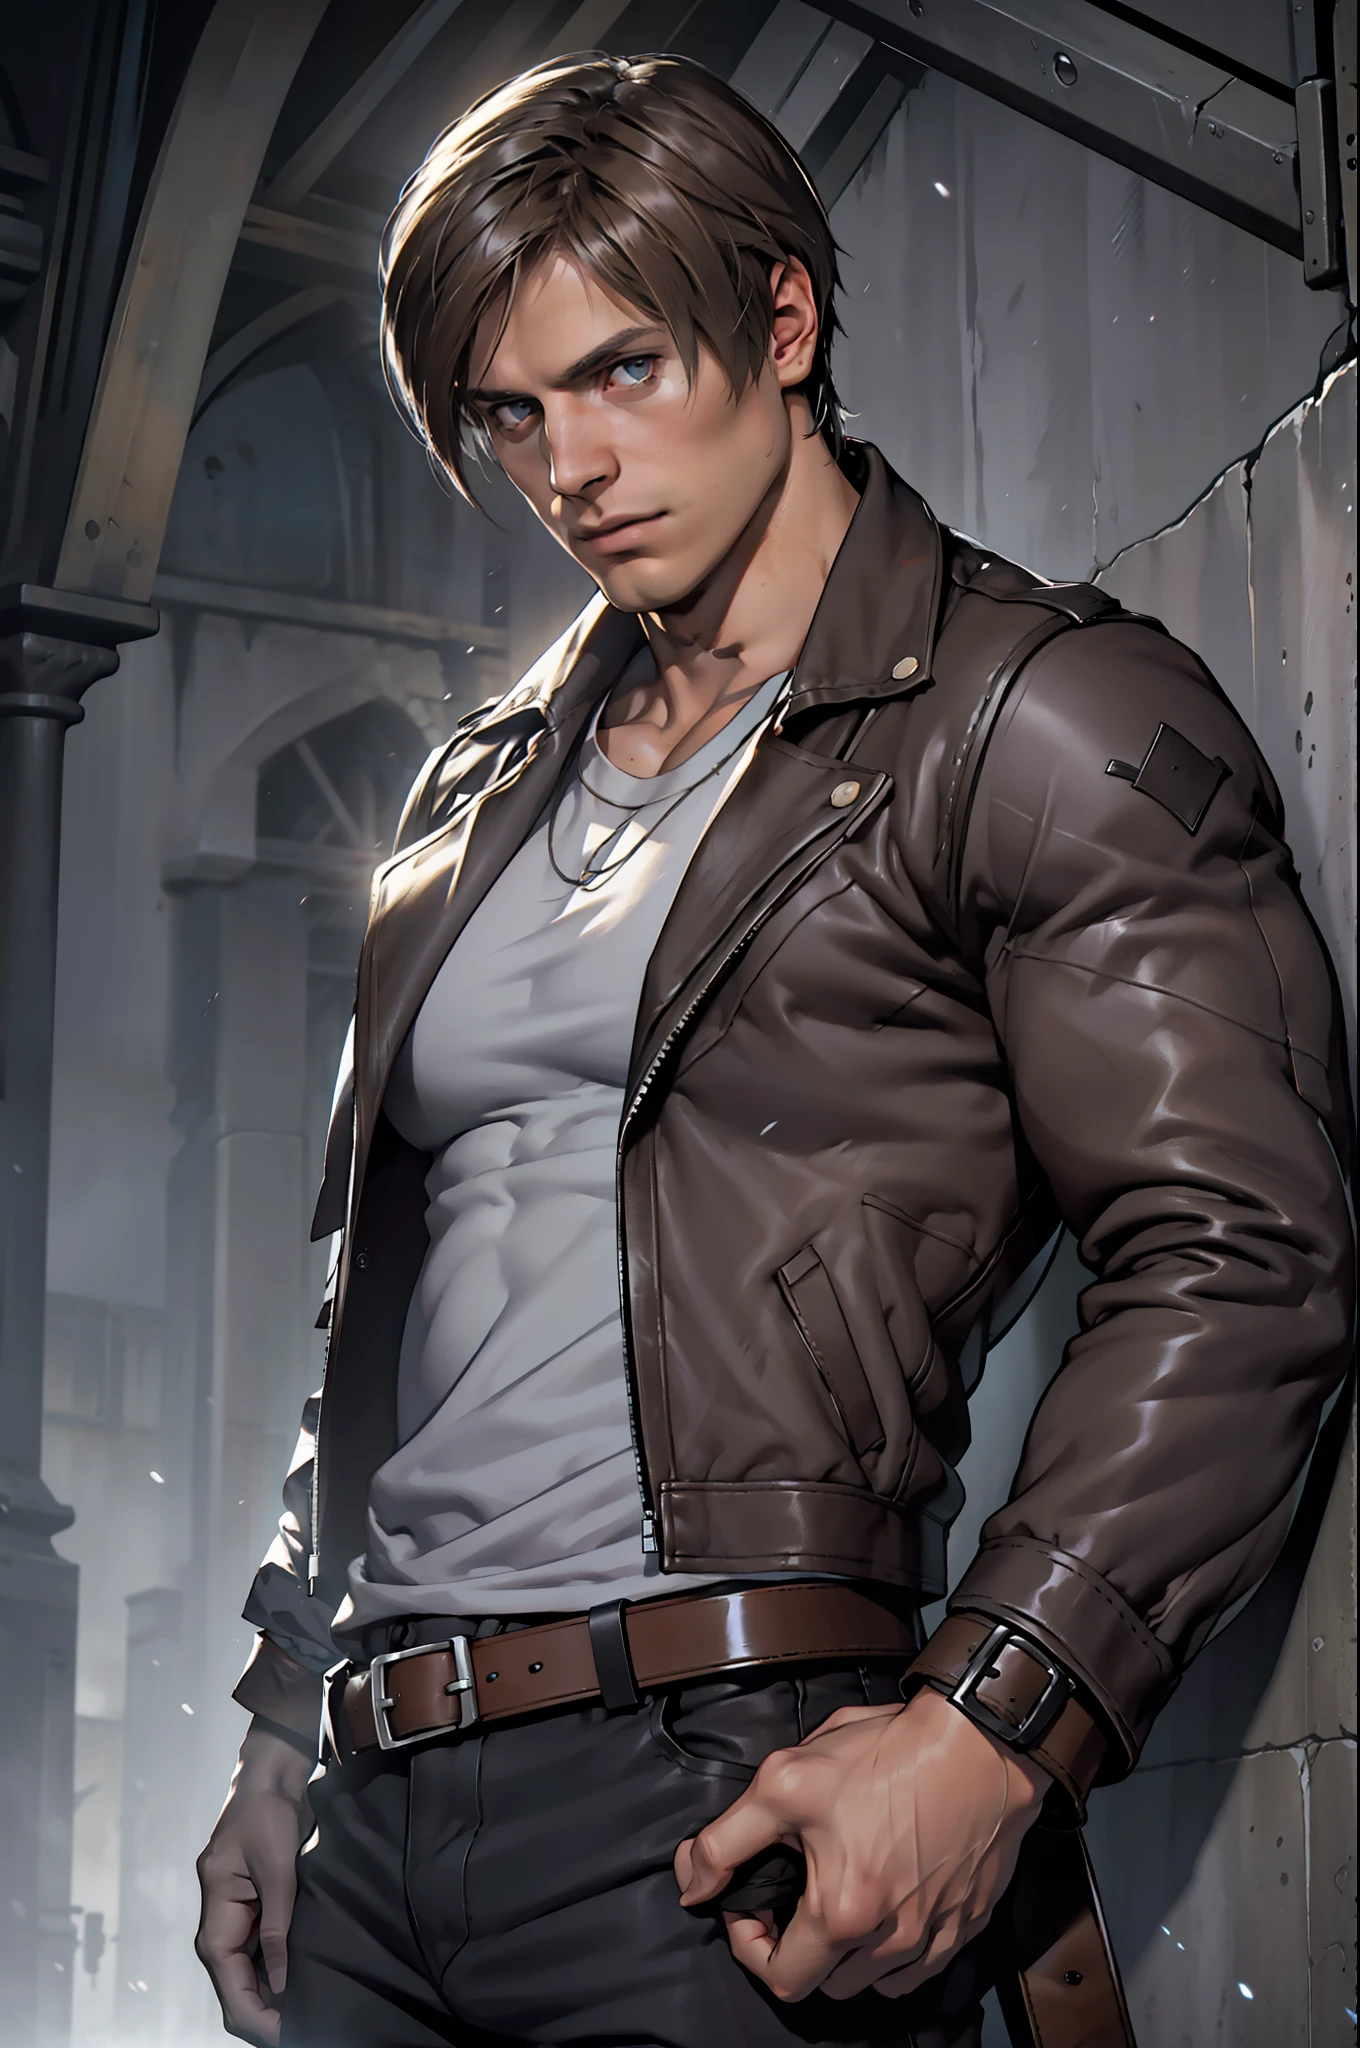 1 человек, молодой человек, 27 лет, Леон С. Кеннеди из Resident Evil 4, лицо Эударда Бадалуты, Один, белая кожа, мускулистый, худощавый мускулистый мужчина, высокий, красавчик, широкое плечо, бритый, темно-коричневые волосы, прическа на занавеске, темно-коричневая холодная кожаная куртка с длинными рукавами и белым мехом на шее, футболка черного цвета внутри, черные брюки, держу пистолет в правой руке, зритель смотрит, высокое разрешение:1.2, Лучшее качество, выстрел в верхнюю часть тела, плоский стиль, облачное небо и фон старой испанской деревни, ночь, низкий угол камеры, объемное освещение, глубина резкости, тень